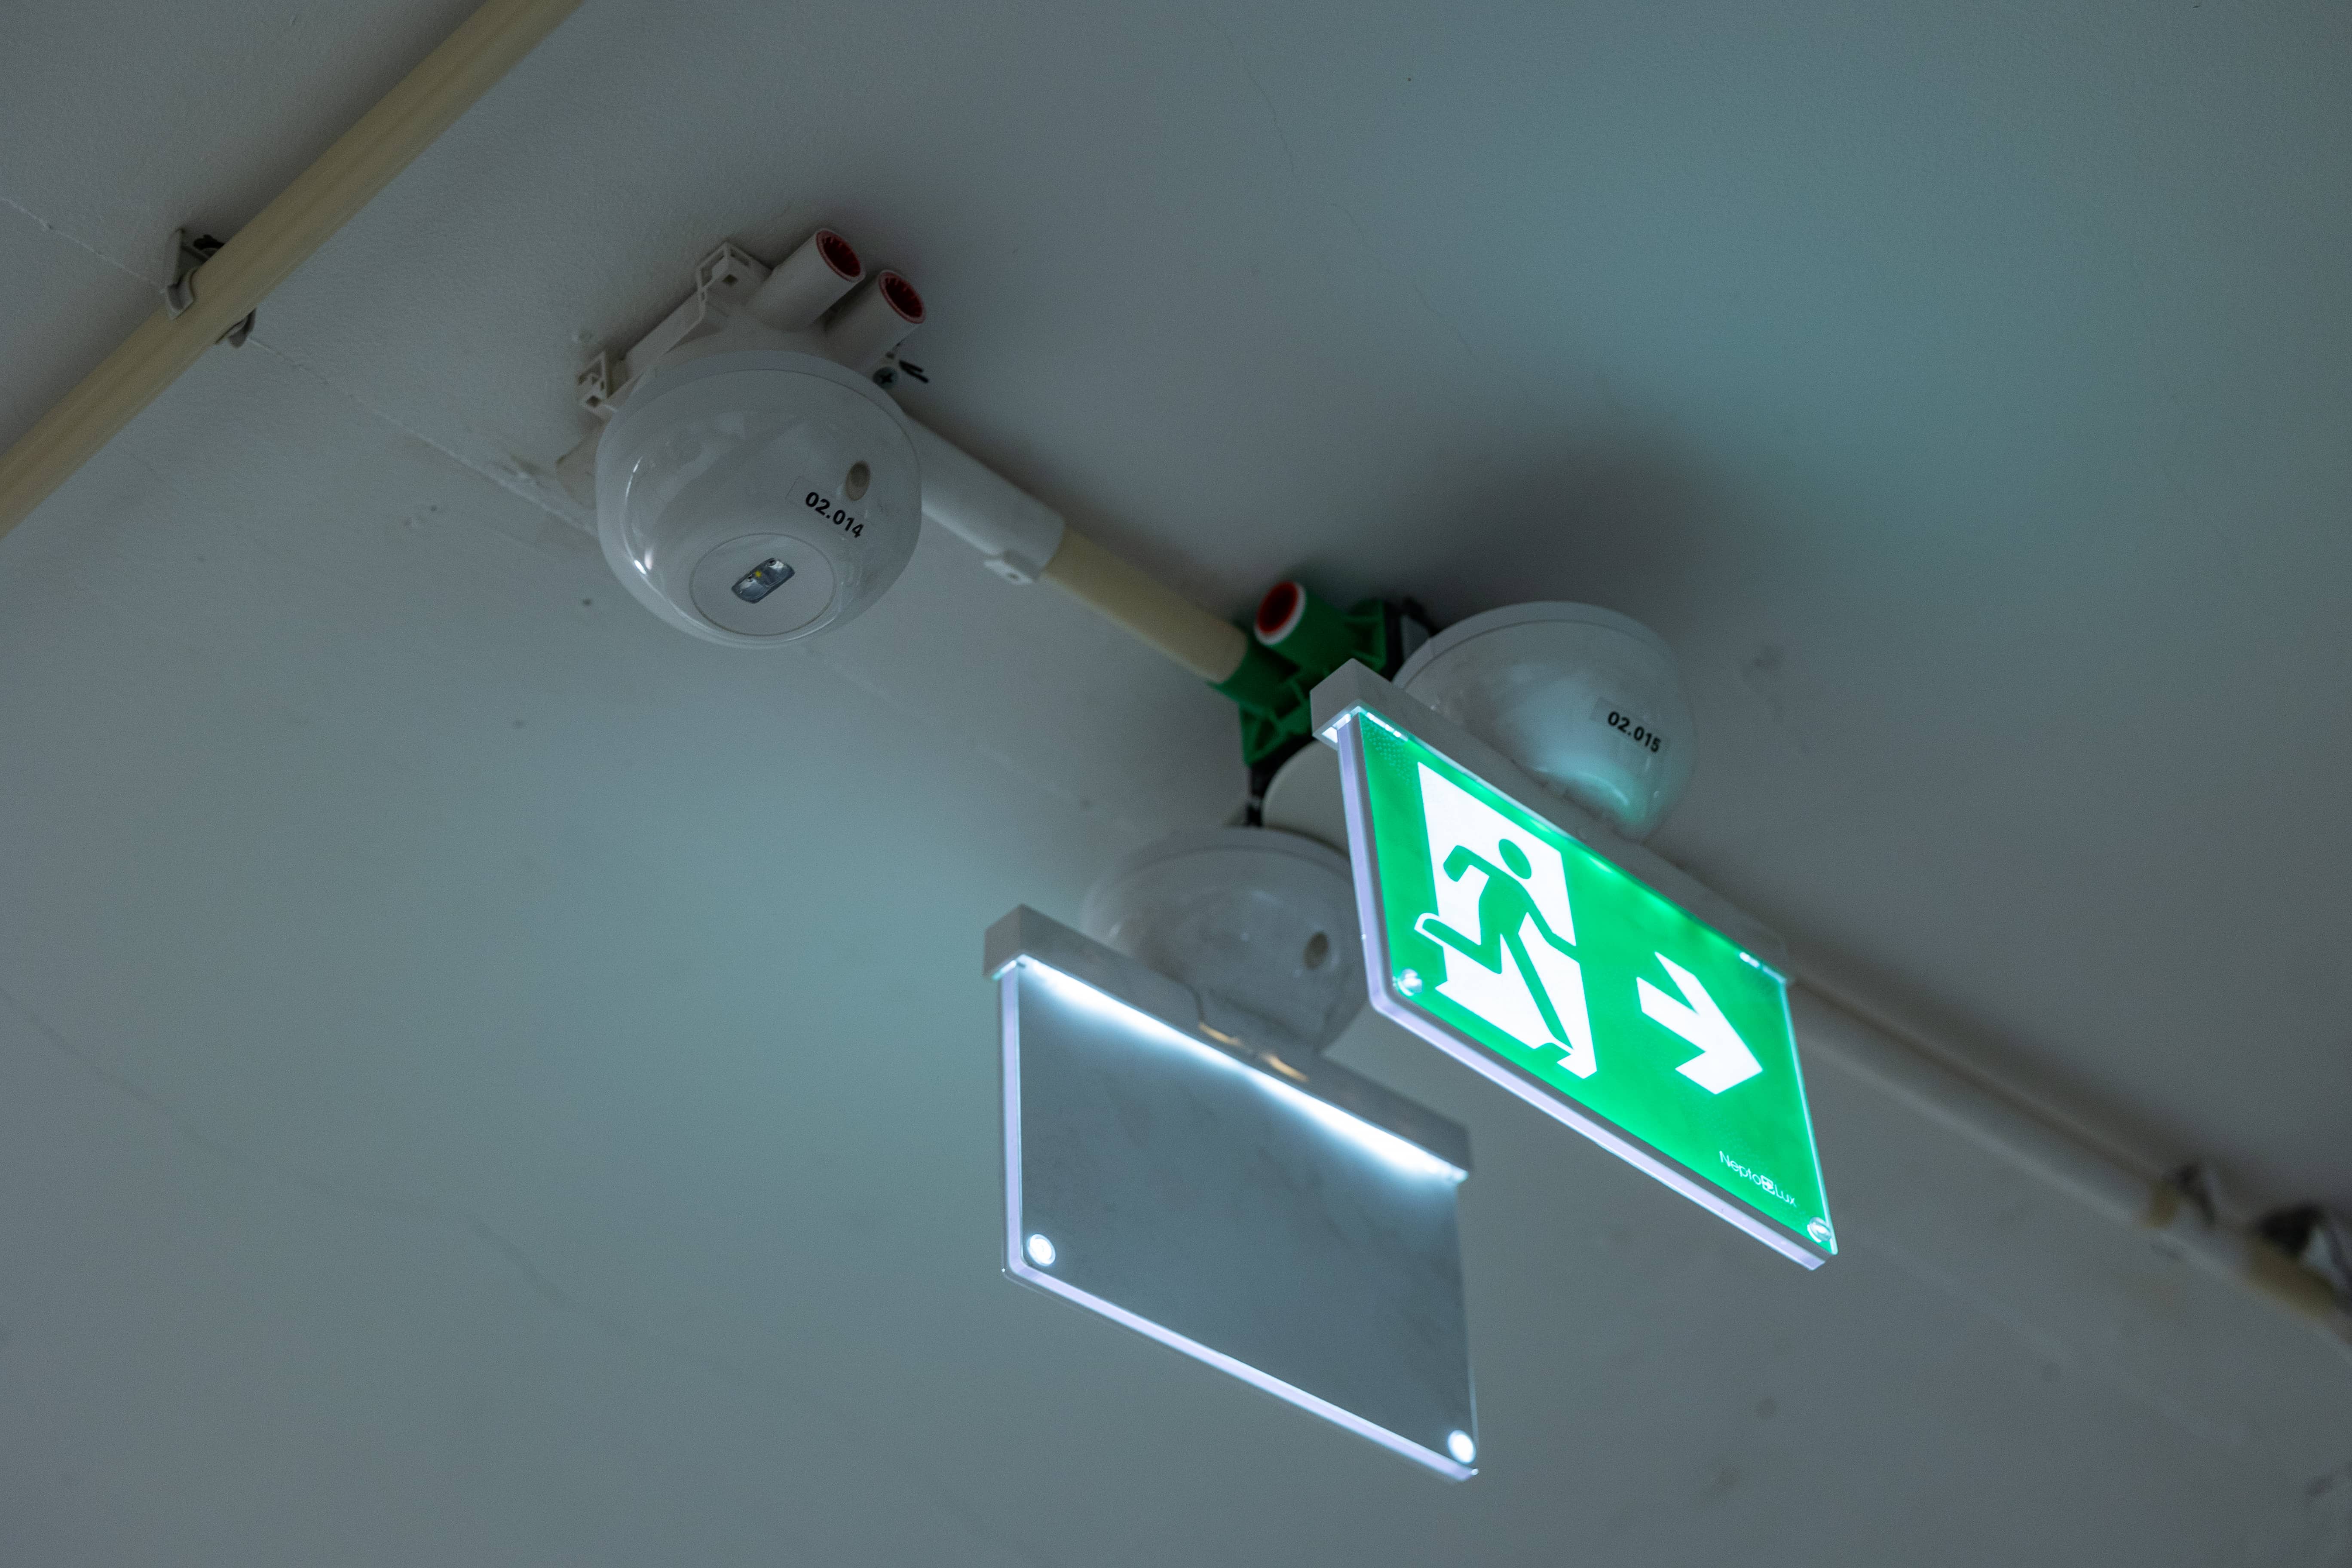 Svanegangen emergency light